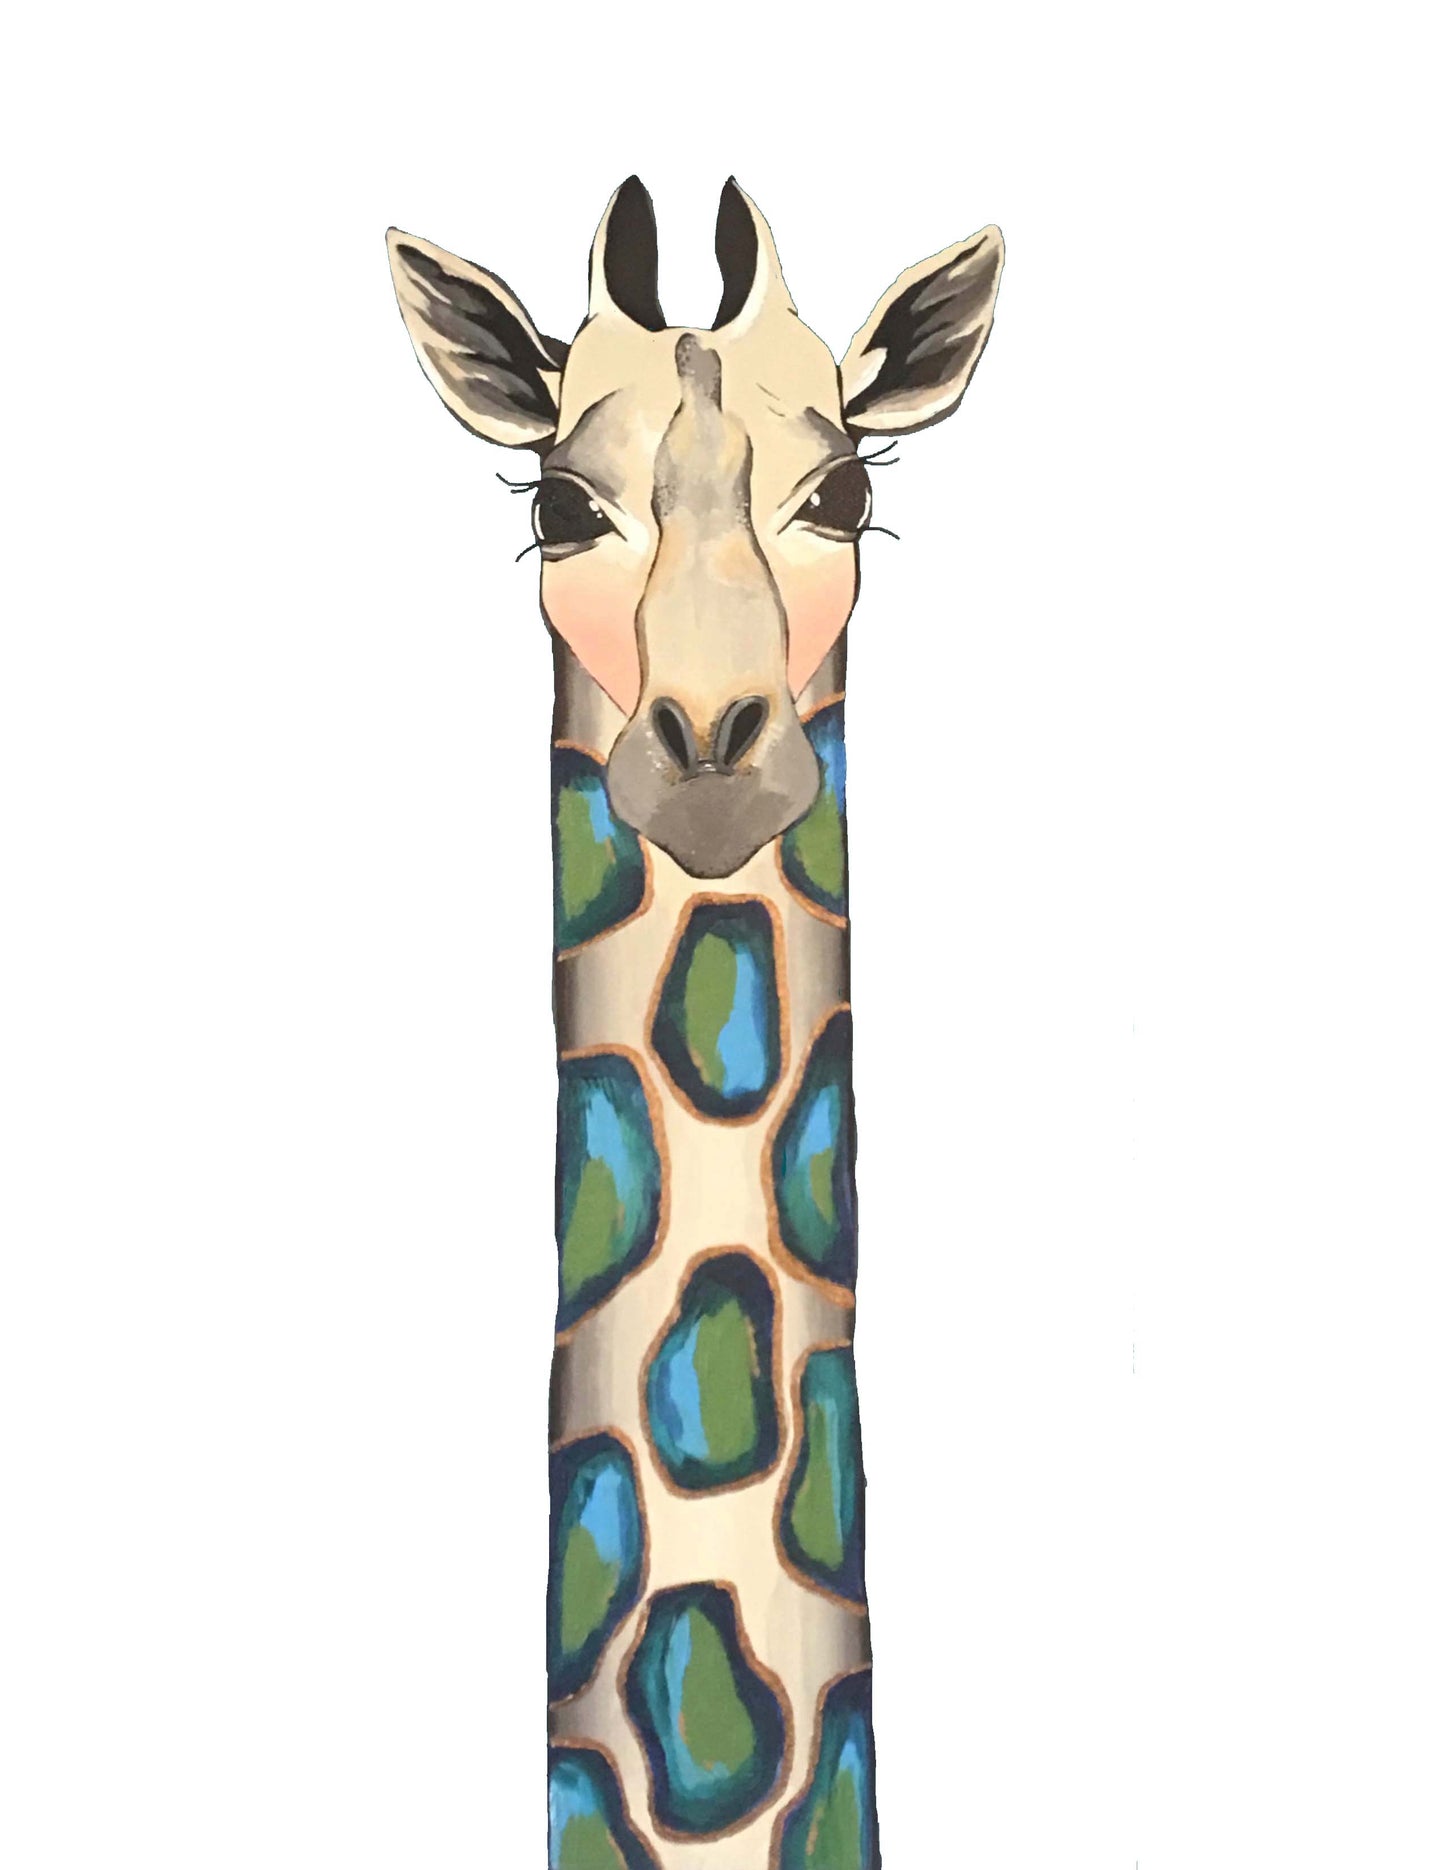 Jewel the Giraffe